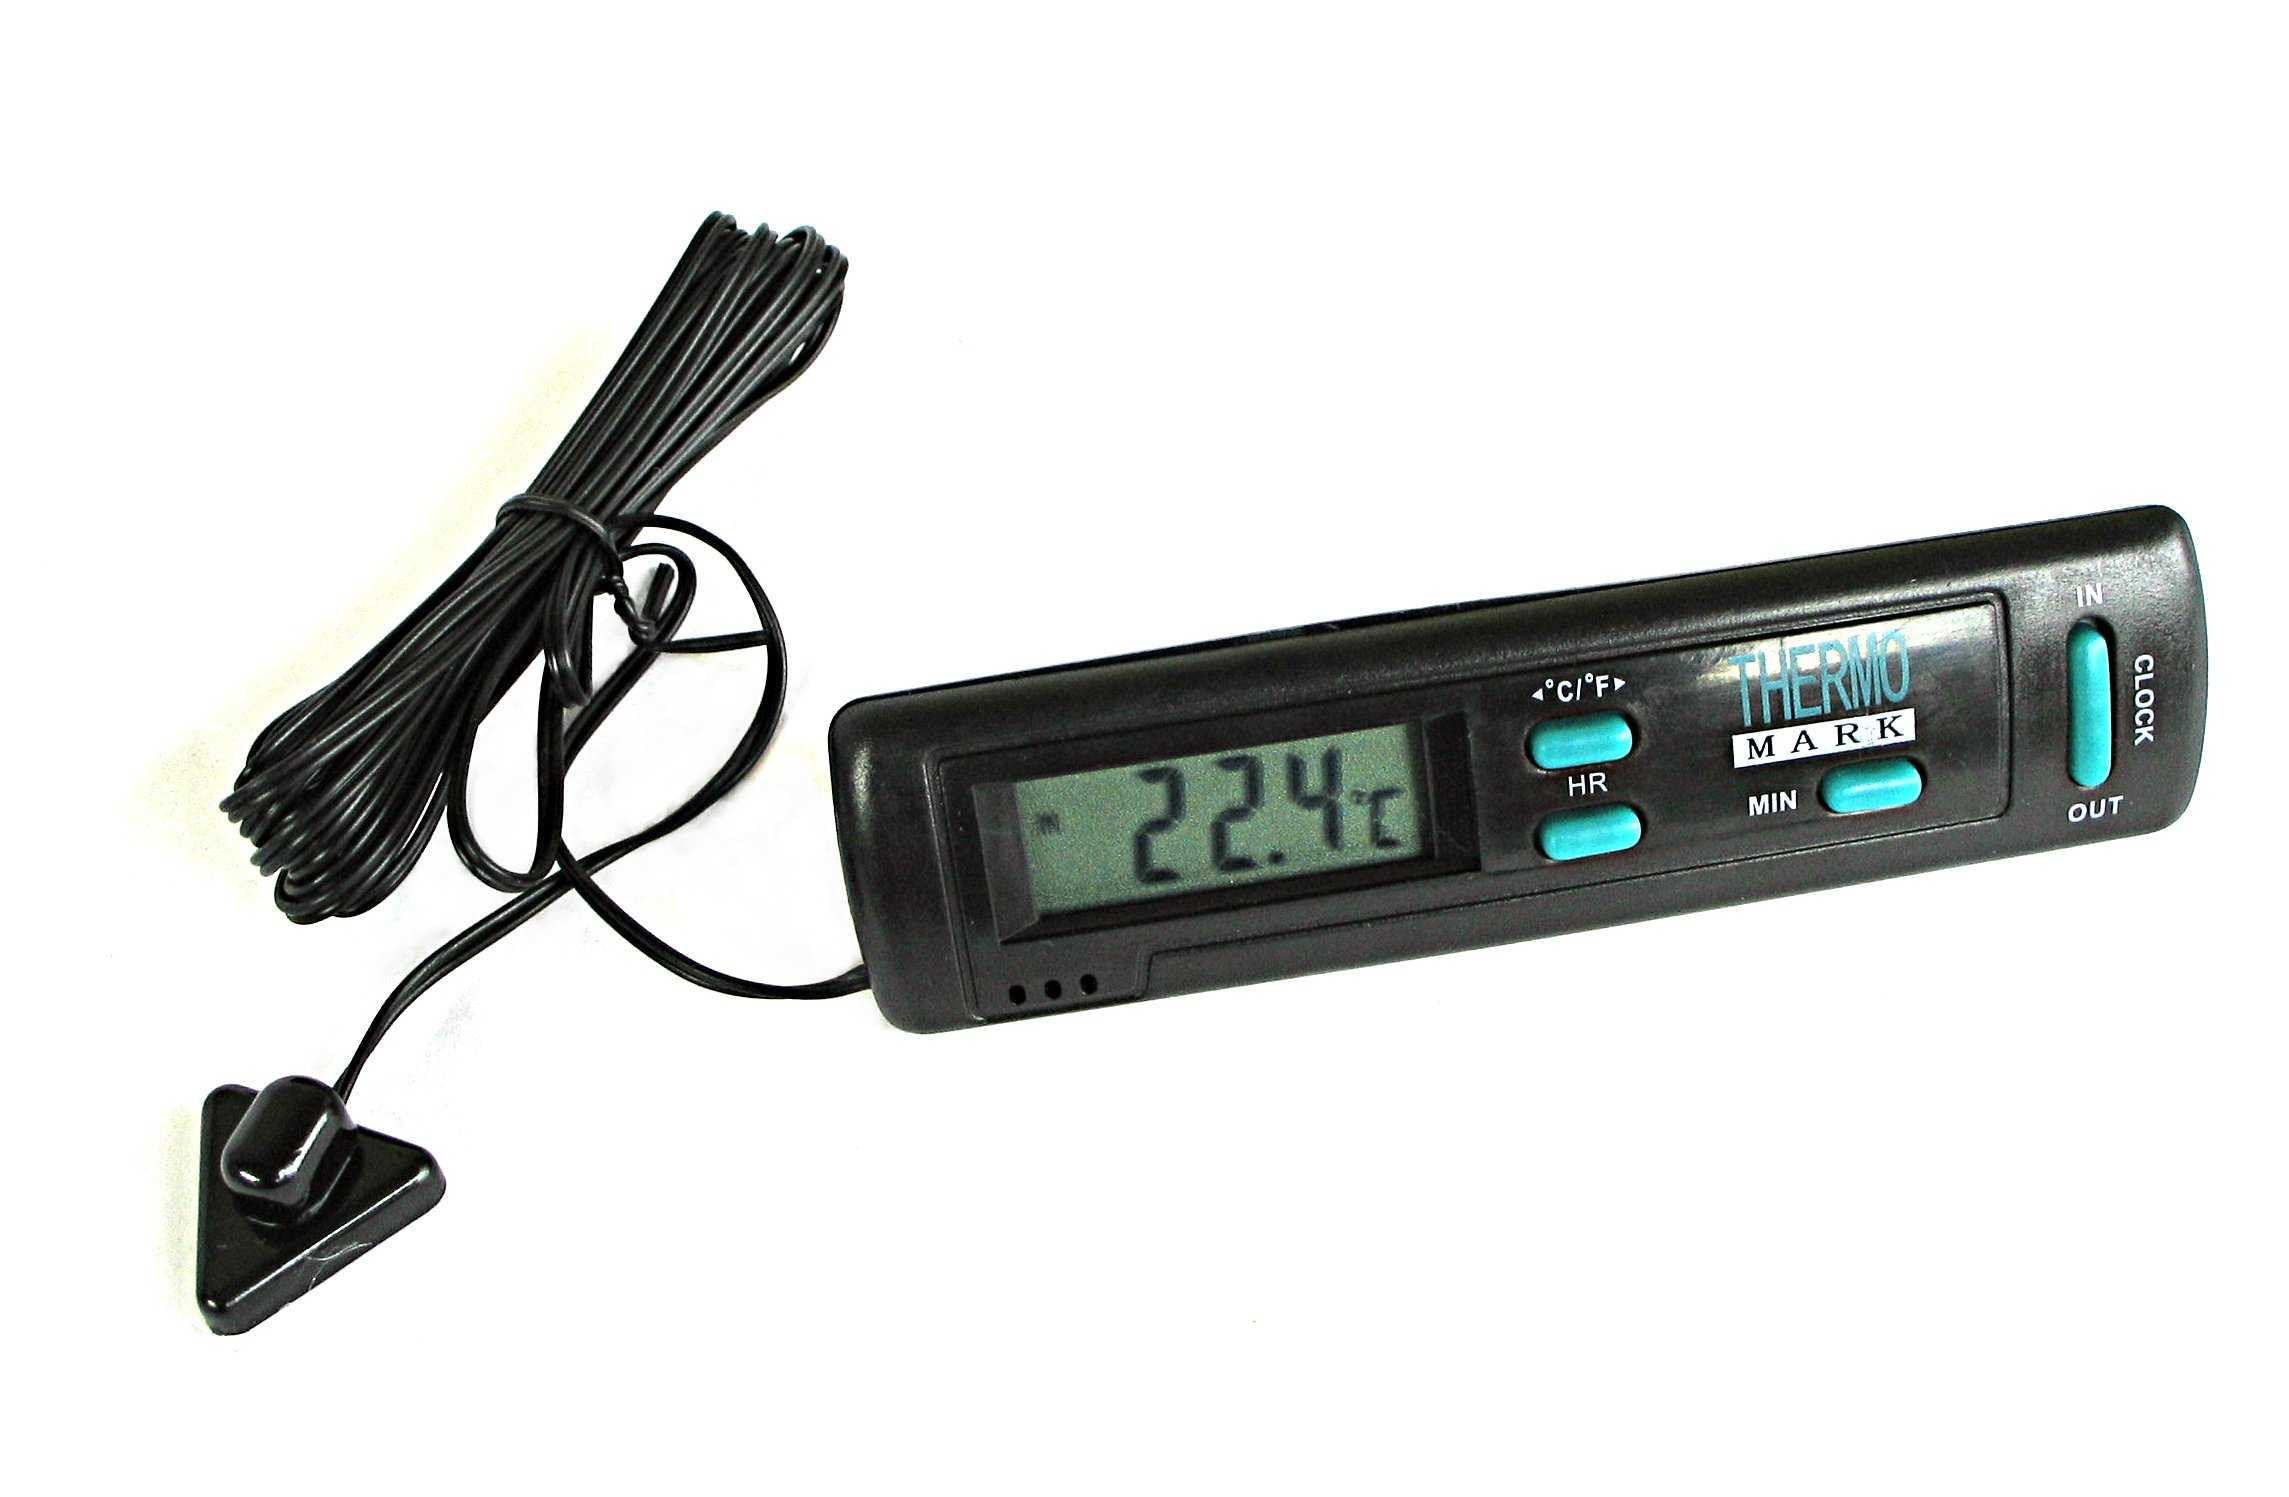 Автомобильный электронный термометр оснащенный выносным датчиком является одним из полезнейших аксессуаров добавляющих комфорта и безопасности при вождении